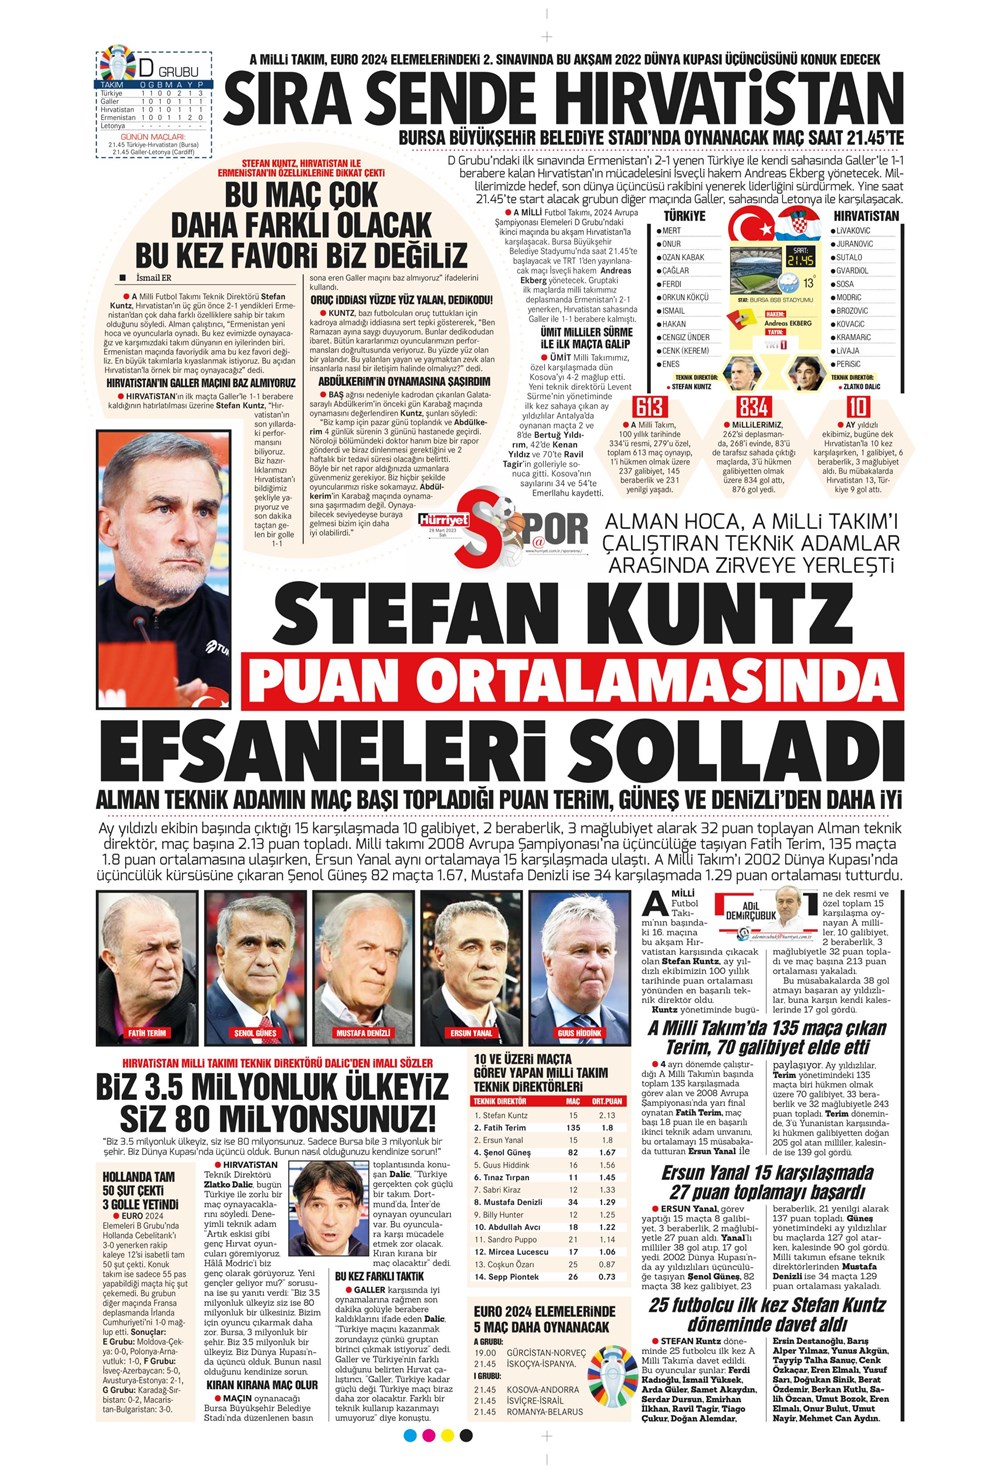 "Vurduğumuz gol olsun" - Sporun manşetleri - 19. Foto